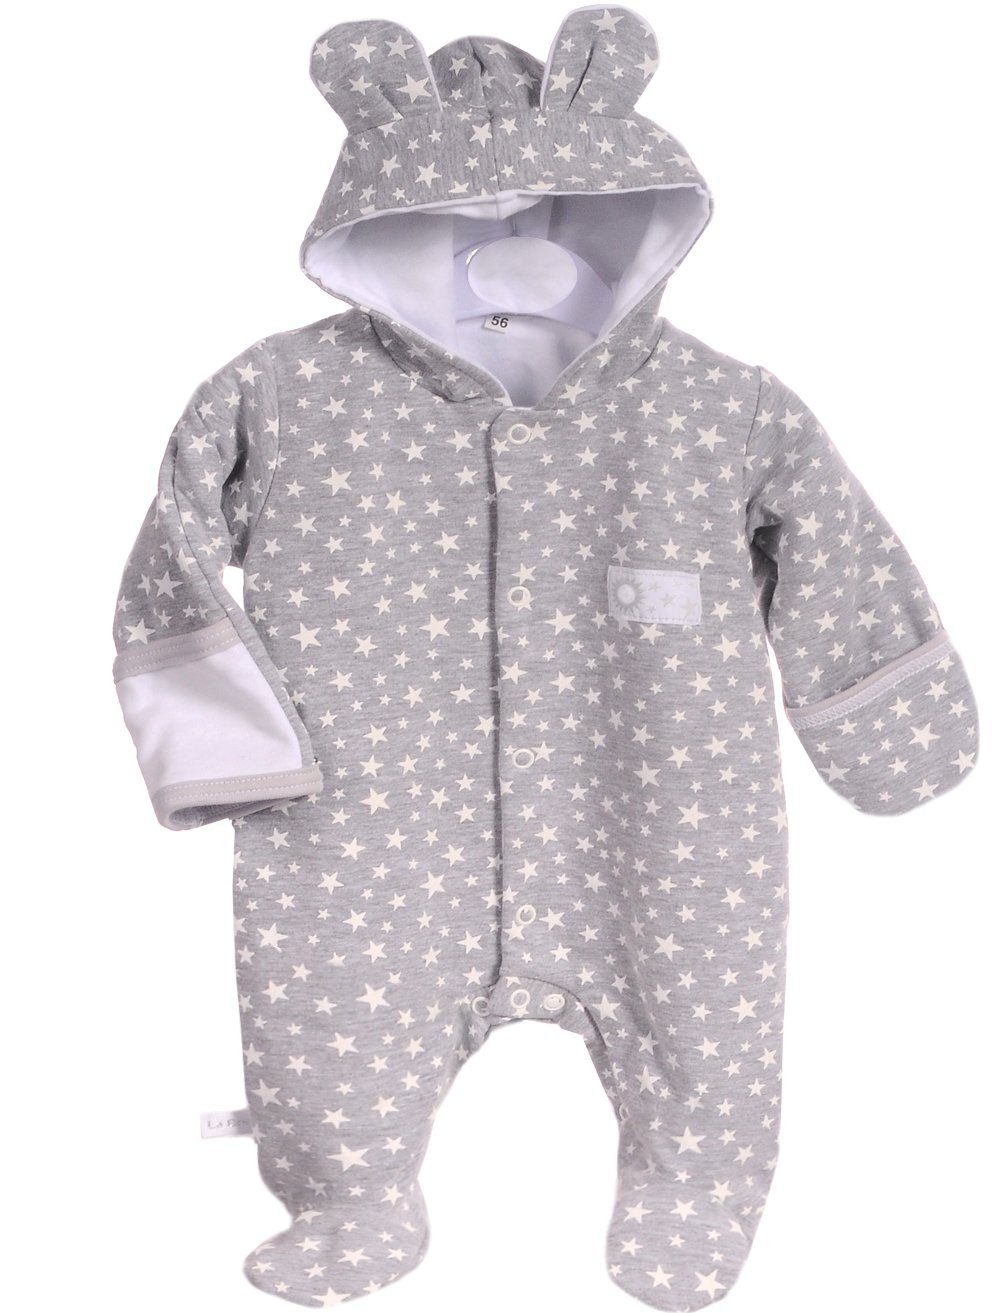 oder Overall Anzug Übergangsoverall Baby für Wagenanzug Herbst Frühjahr Bortini La